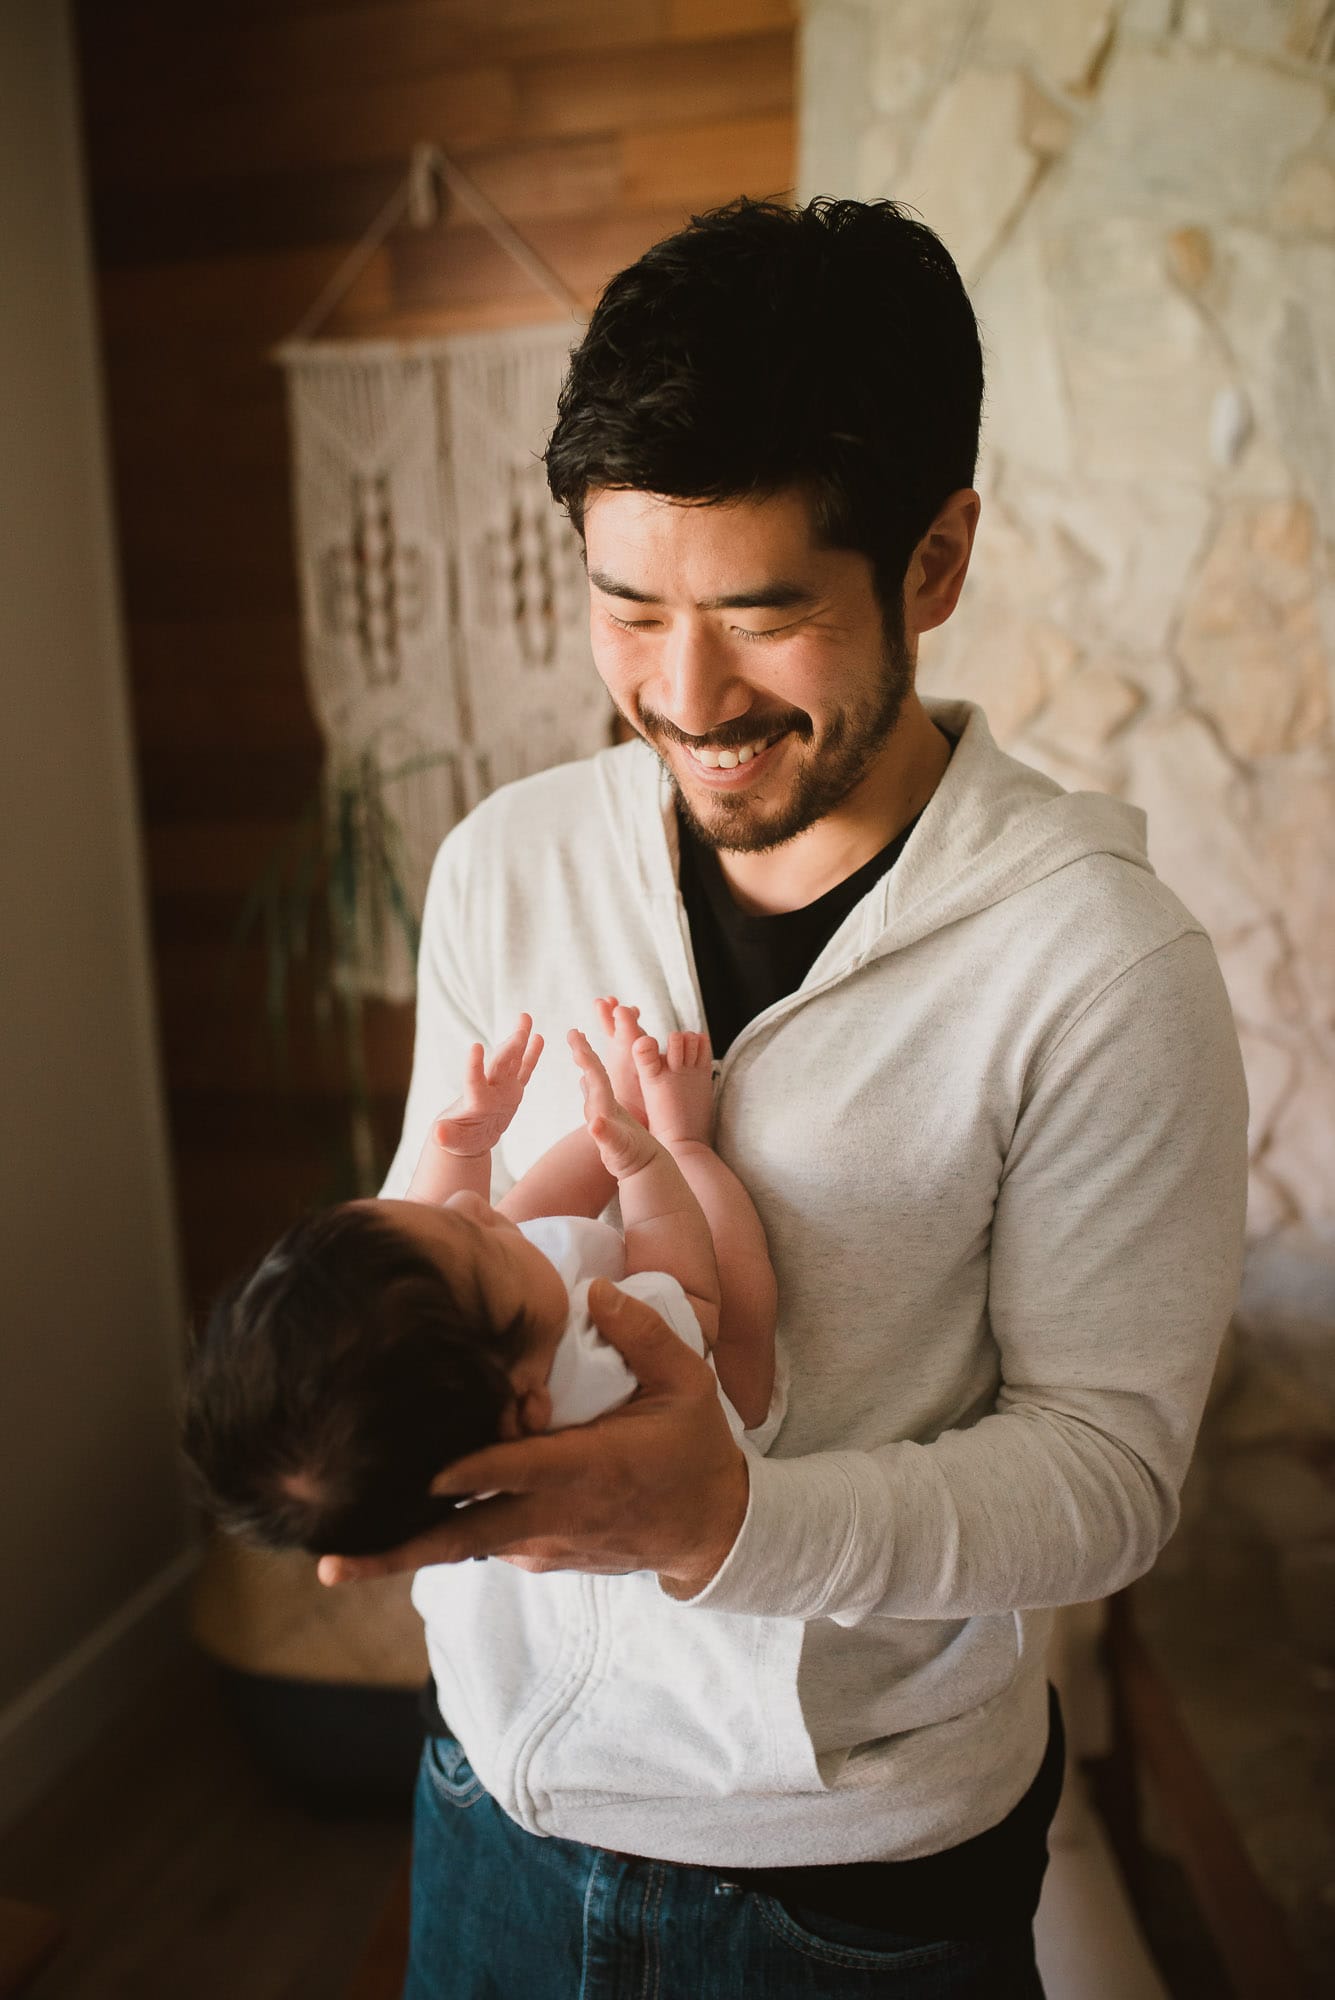 port coquitlam newborn photographer captures dad smiling at newborn baby